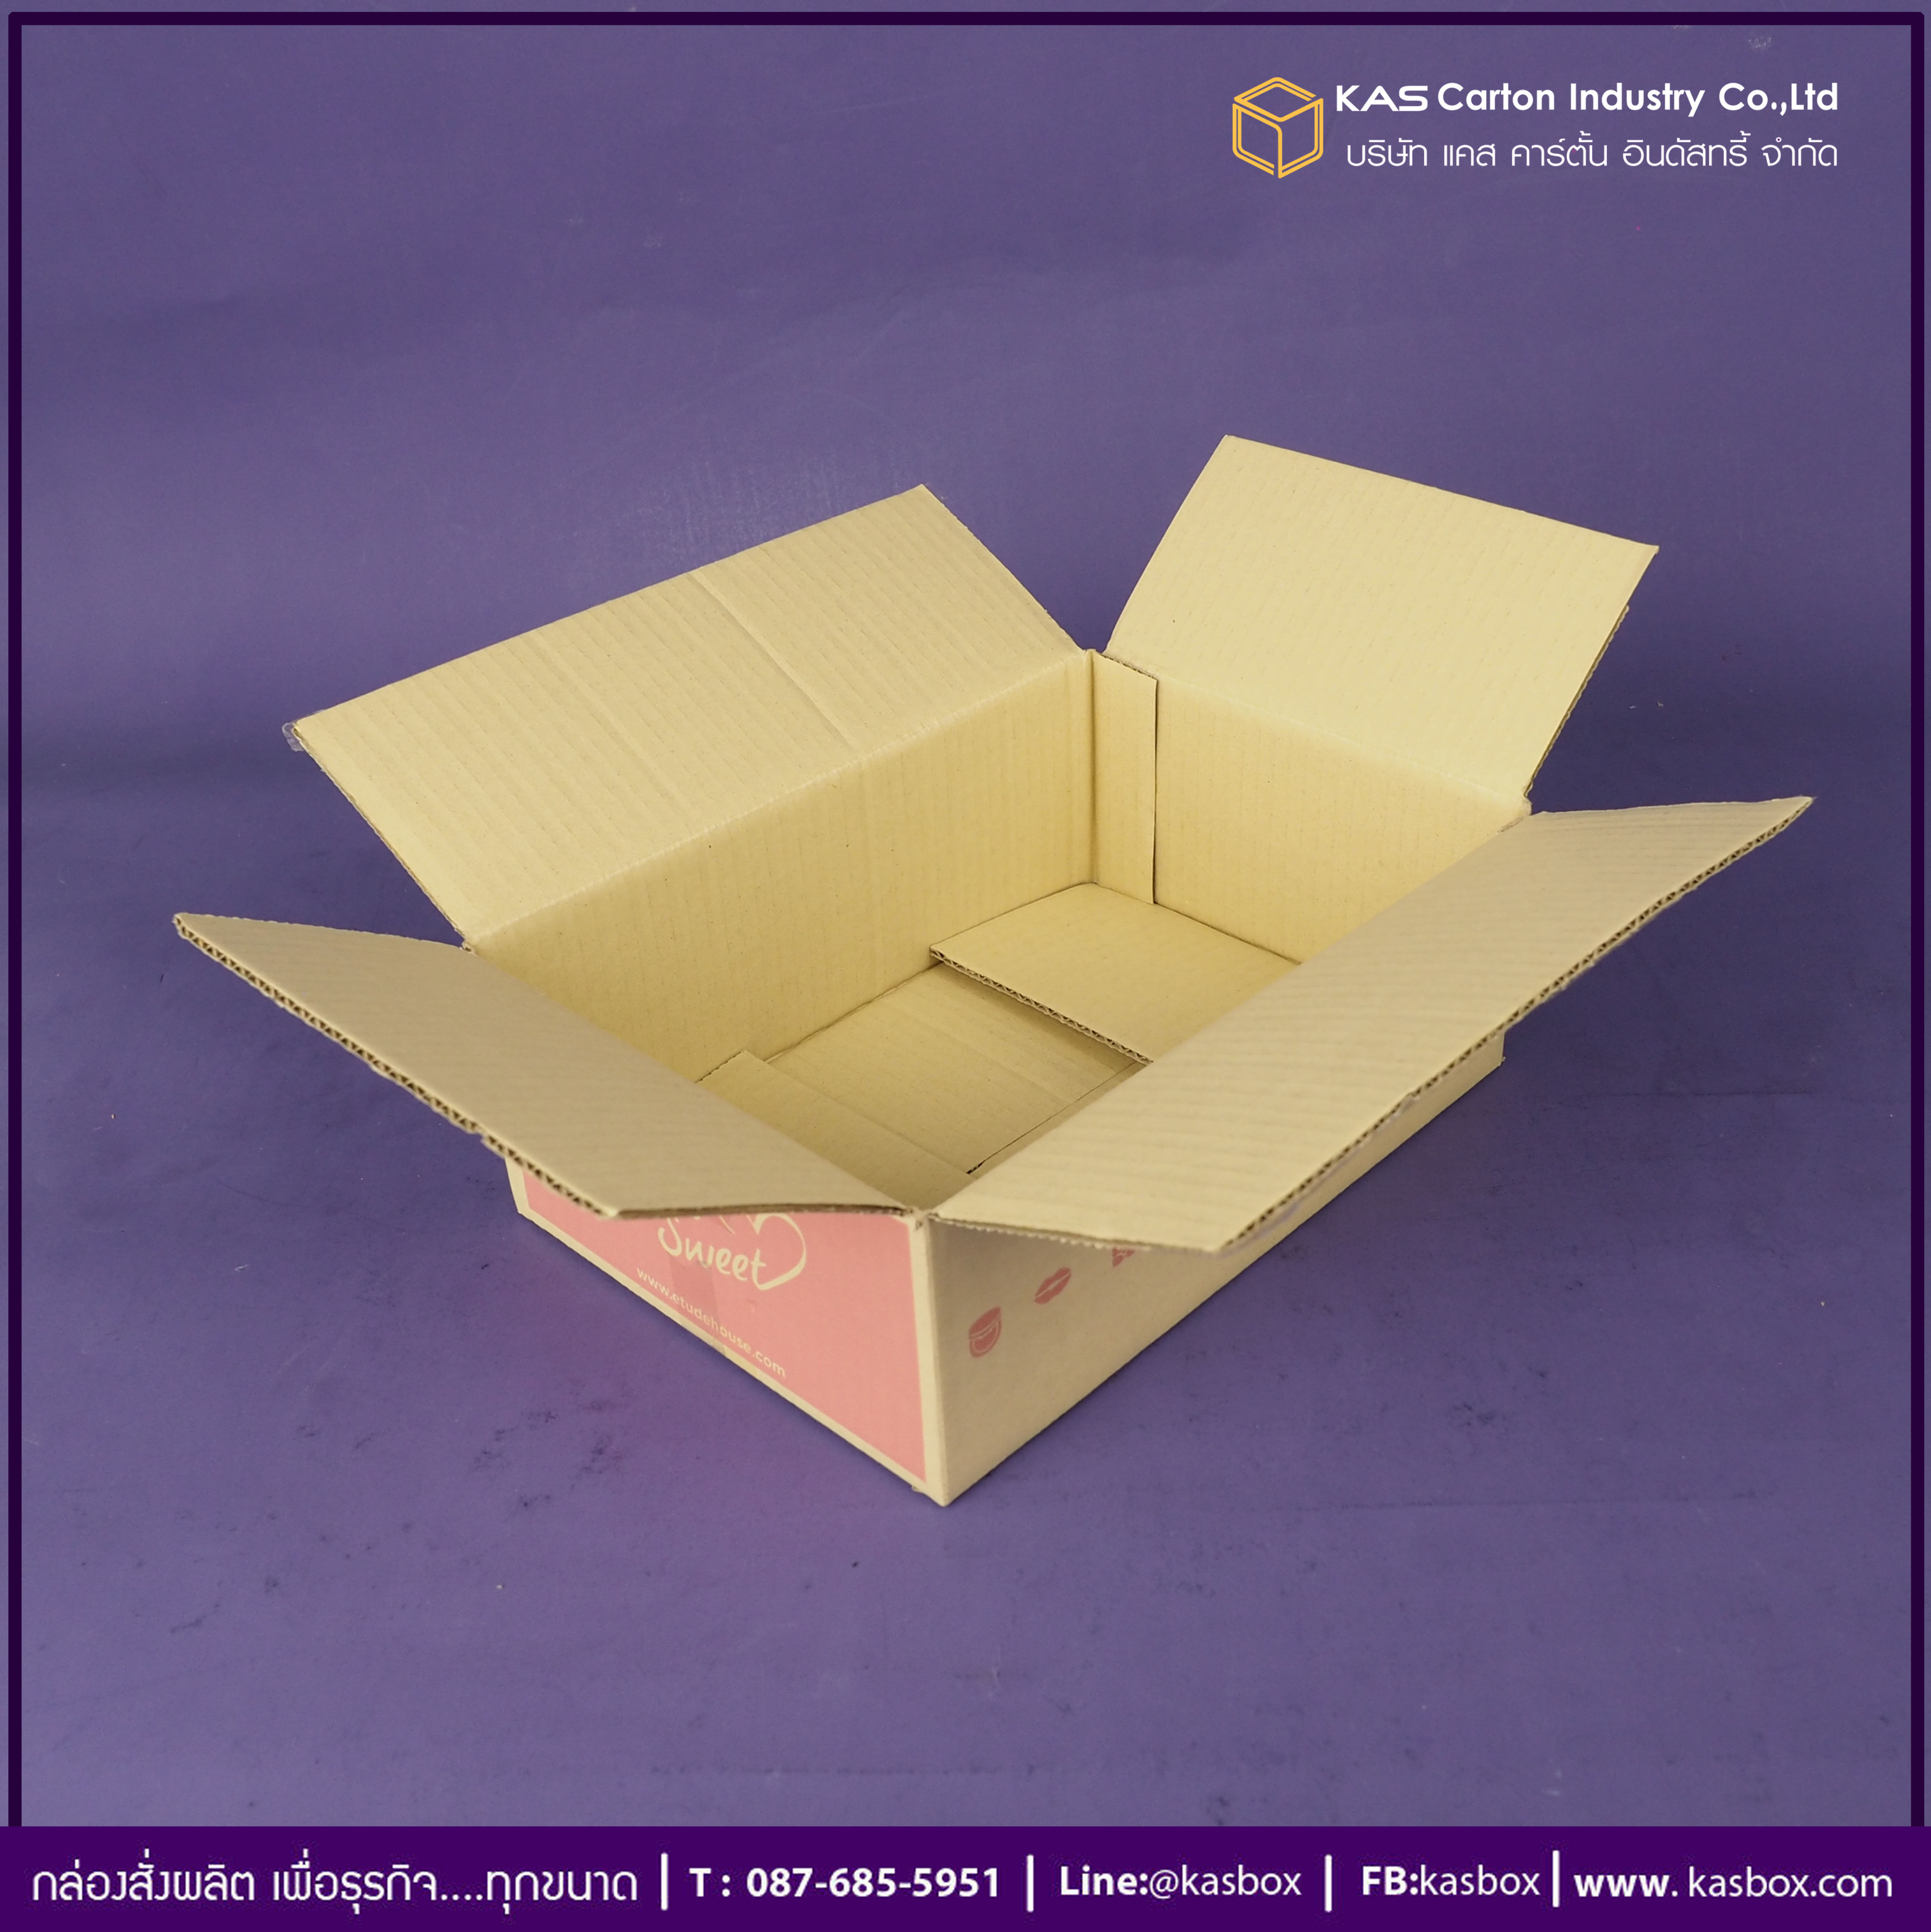 กล่องลูกฟูก สำเร็จรูป และ สั่งผลิต ตามความต้องการลูกค้า กล่องกระดาษลูกฟูก กล่องบรรจุ เครื่องสำอางค์